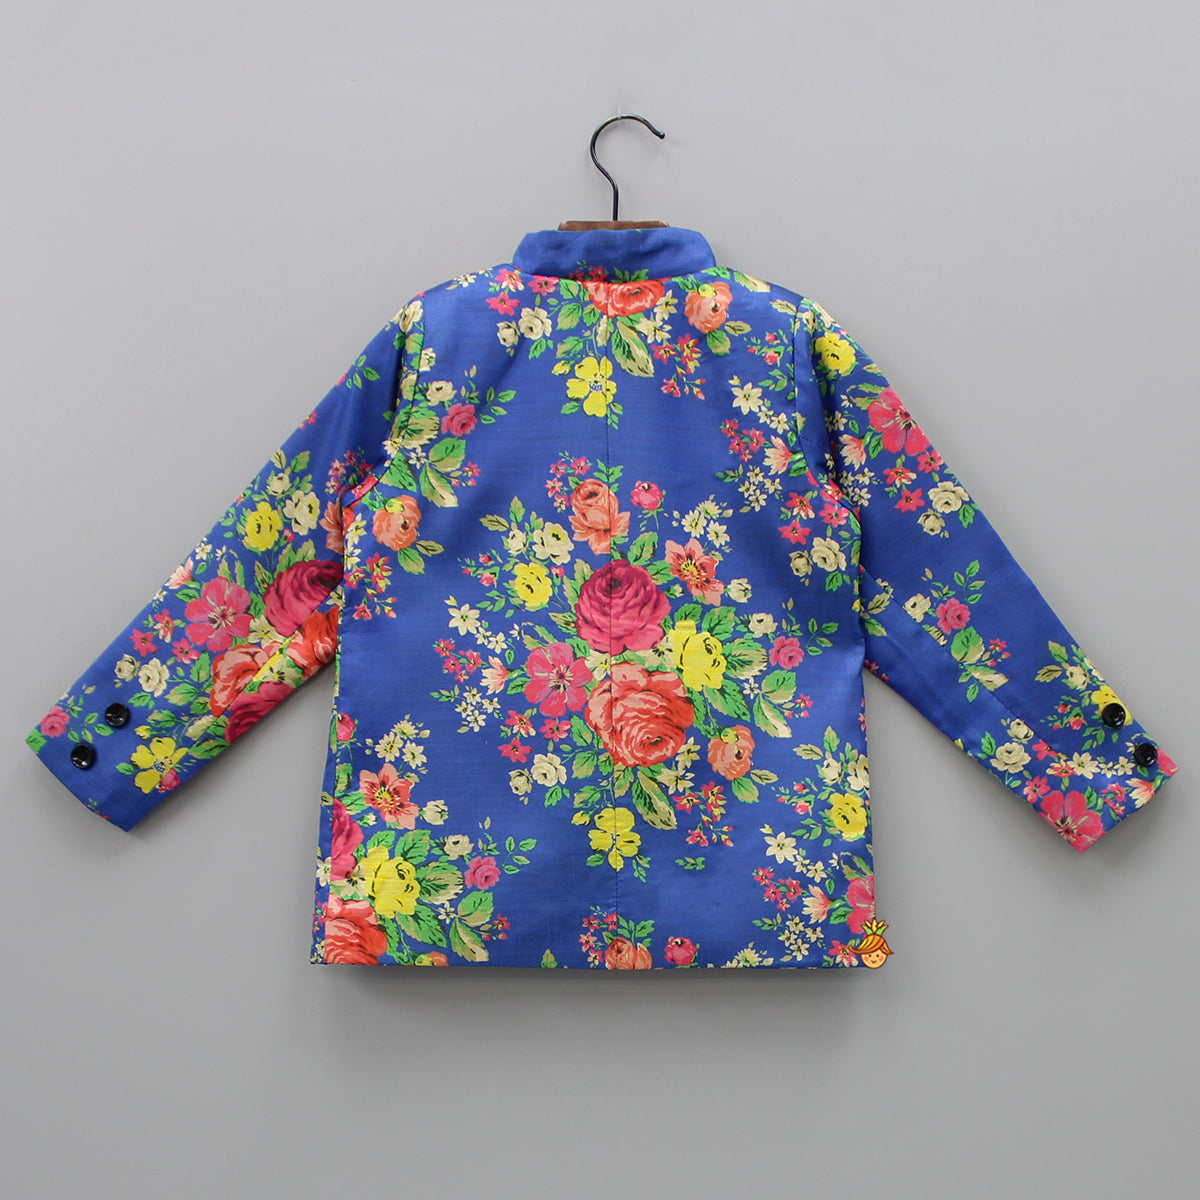 Floral Royal Blue Pocket Square Coat Style Jacket